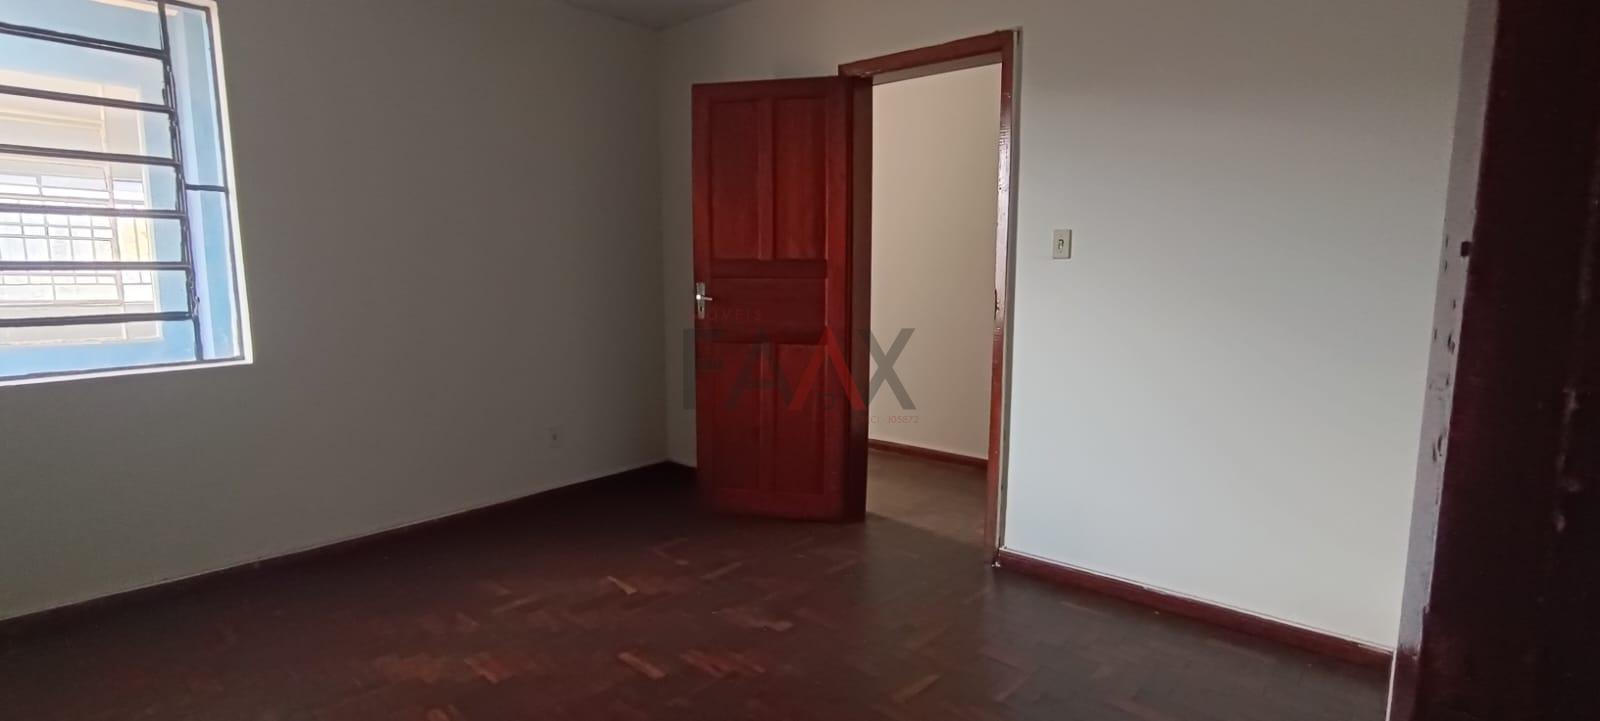 Apartamento, 3 quartos, 154 m² - Foto 3